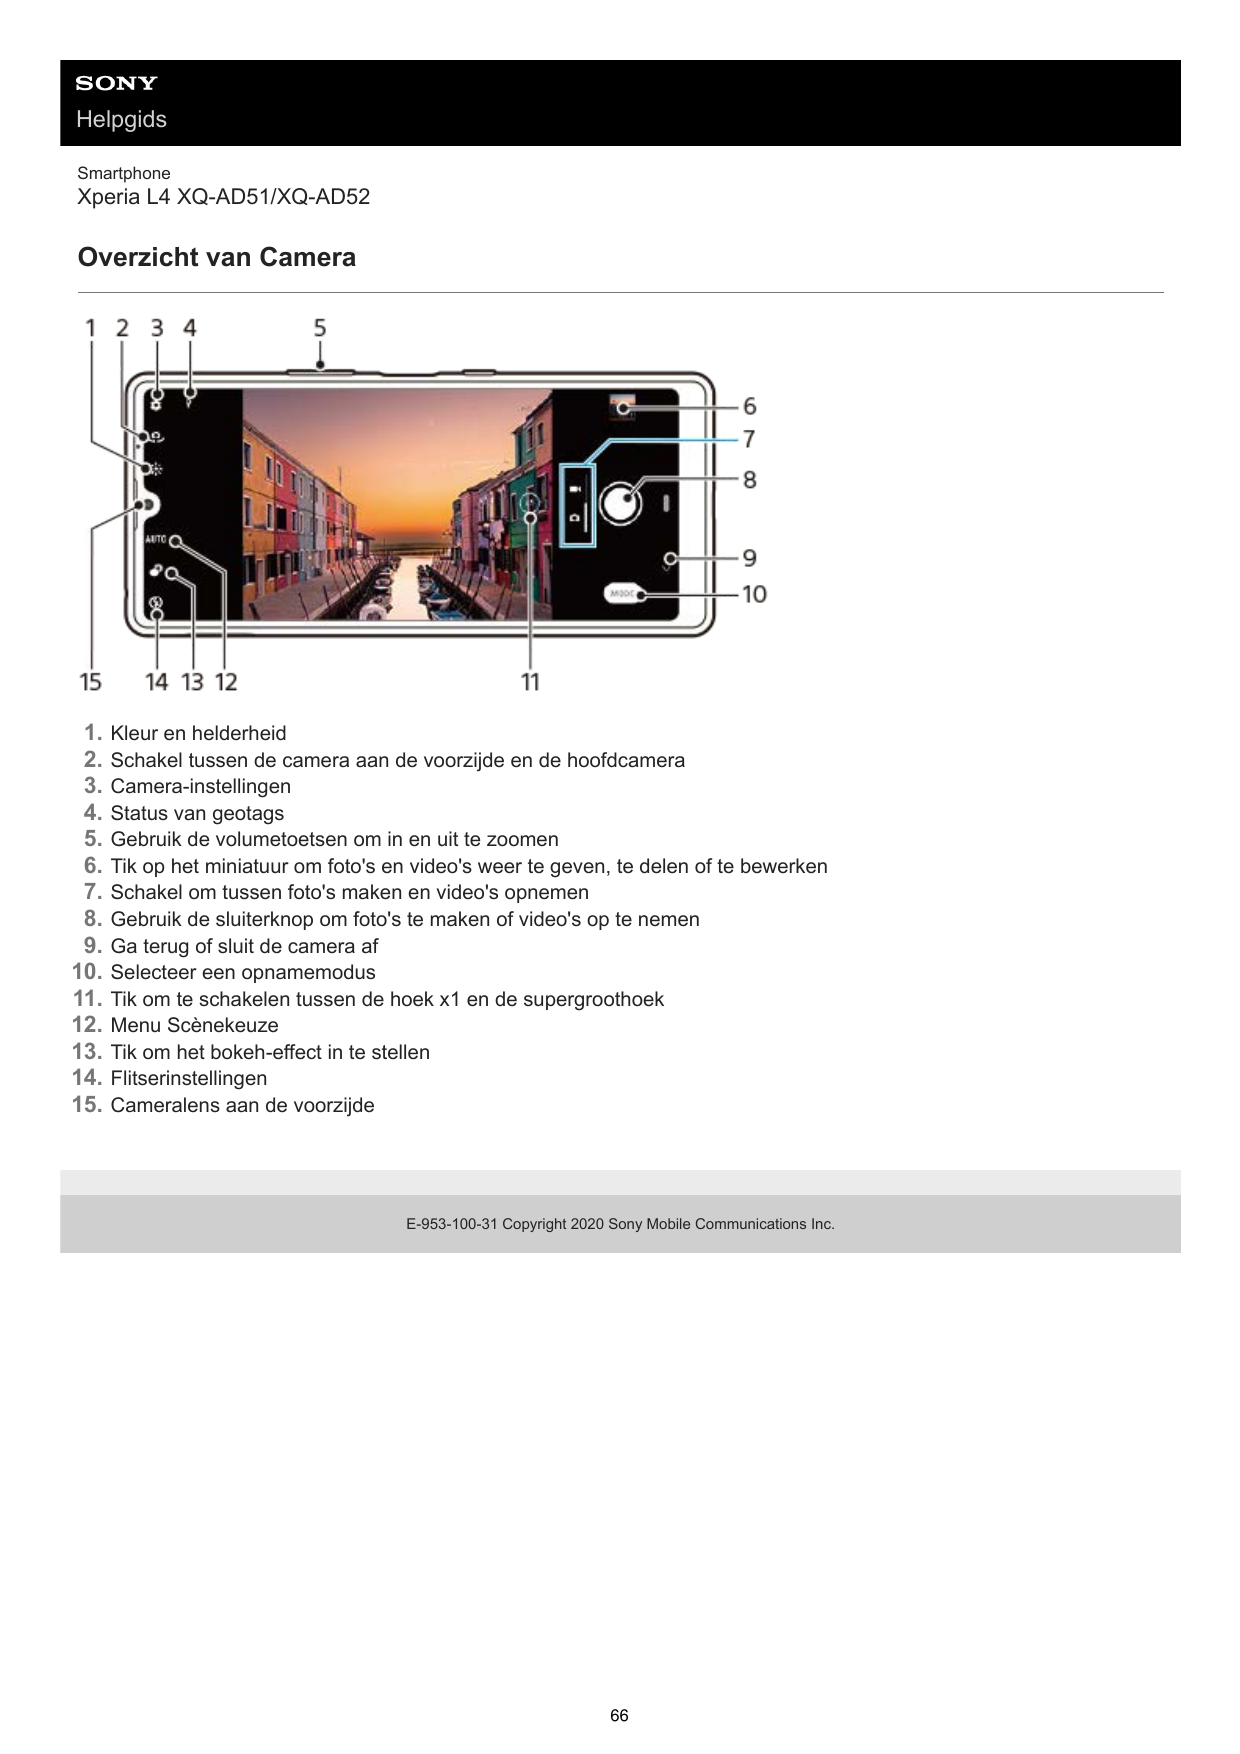 HelpgidsSmartphoneXperia L4 XQ-AD51/XQ-AD52Overzicht van Camera1.2.3.4.5.6.7.8.9.10.11.12.13.14.15.Kleur en helderheidSchakel tu